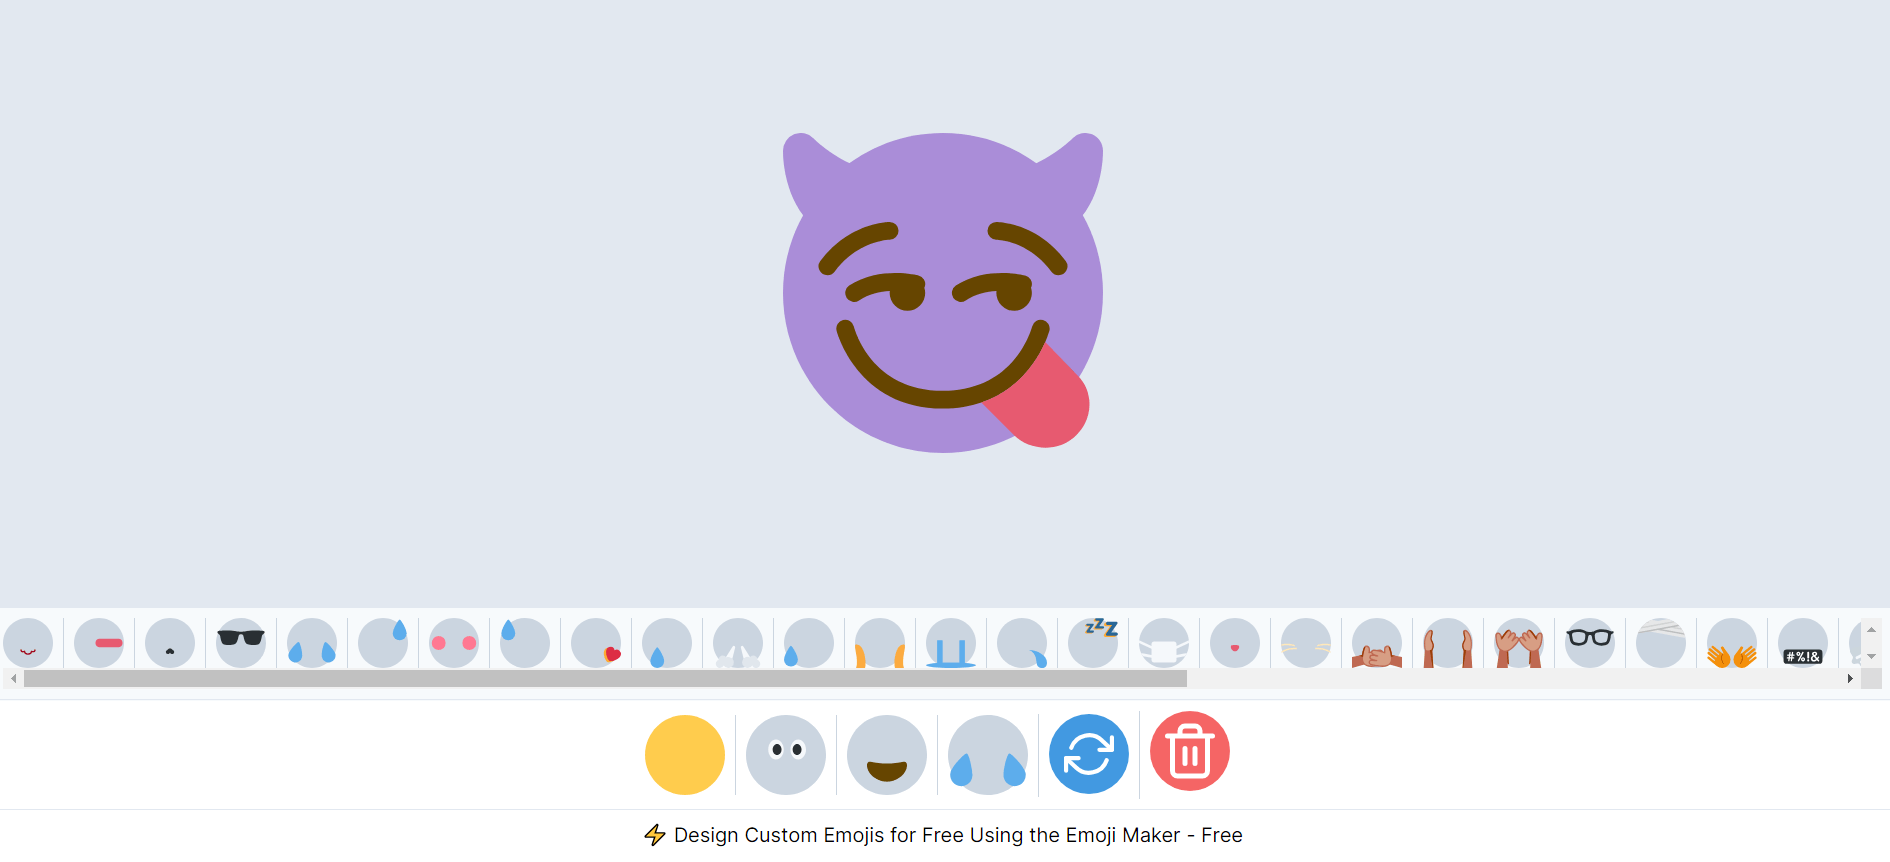 Outils IA pour créer des emojis : Flat Icons Emoji Maker